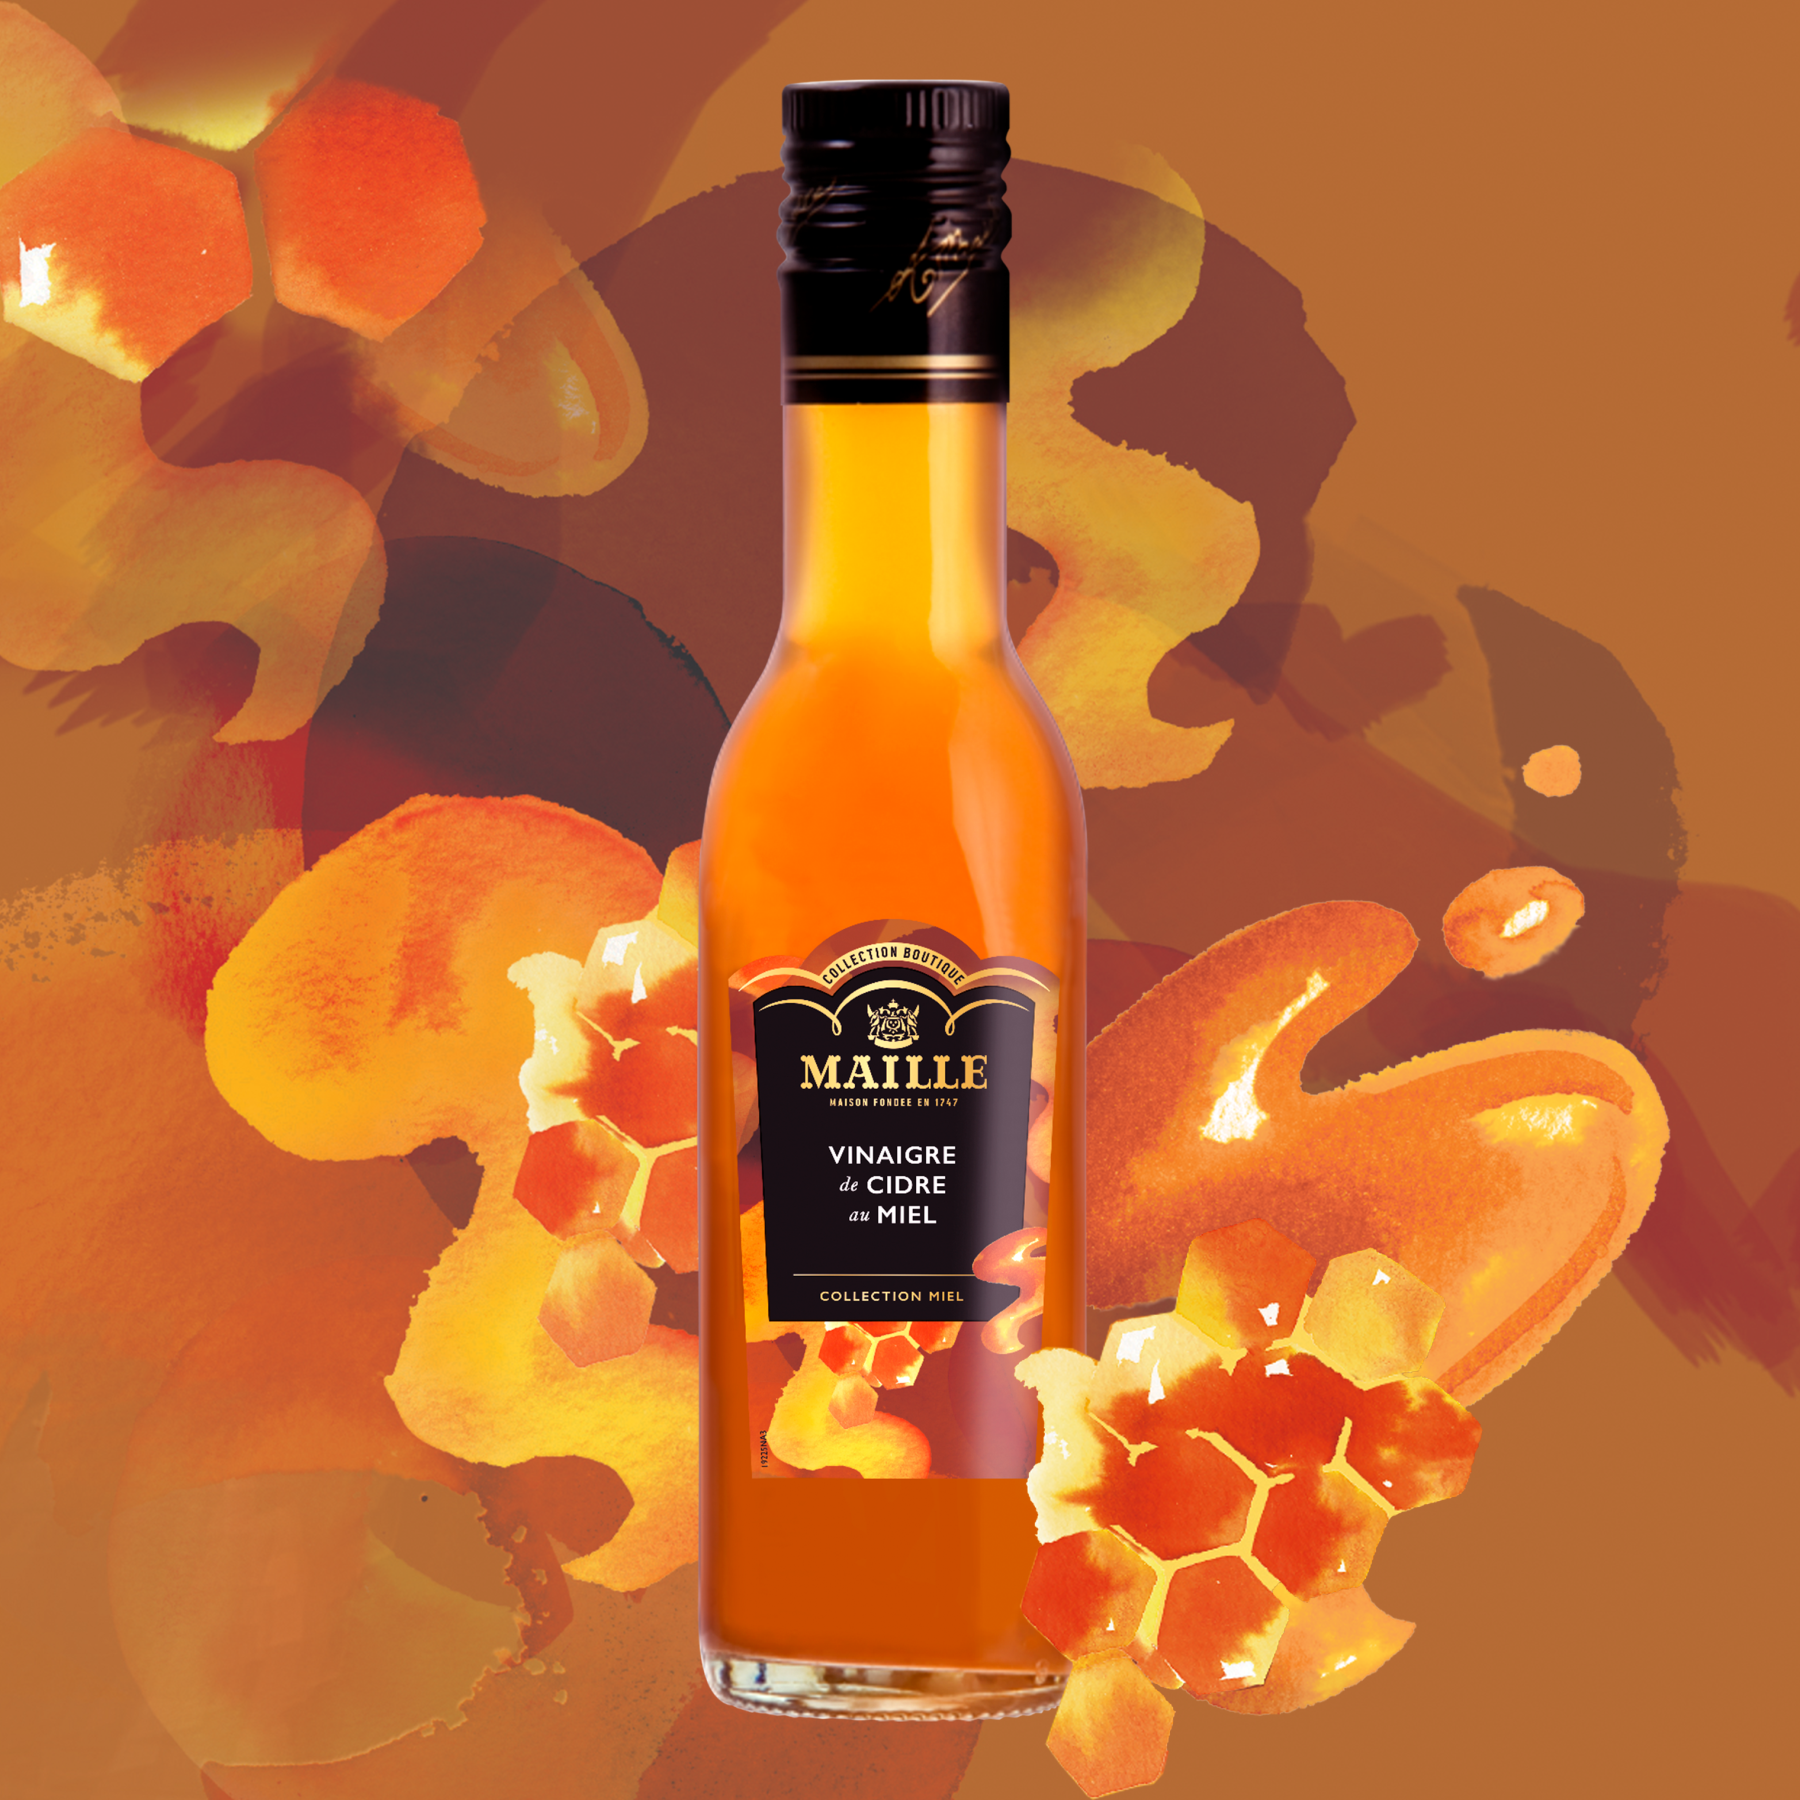 Maille - Vinaigre de cidre au miel, 250 ml, new visual